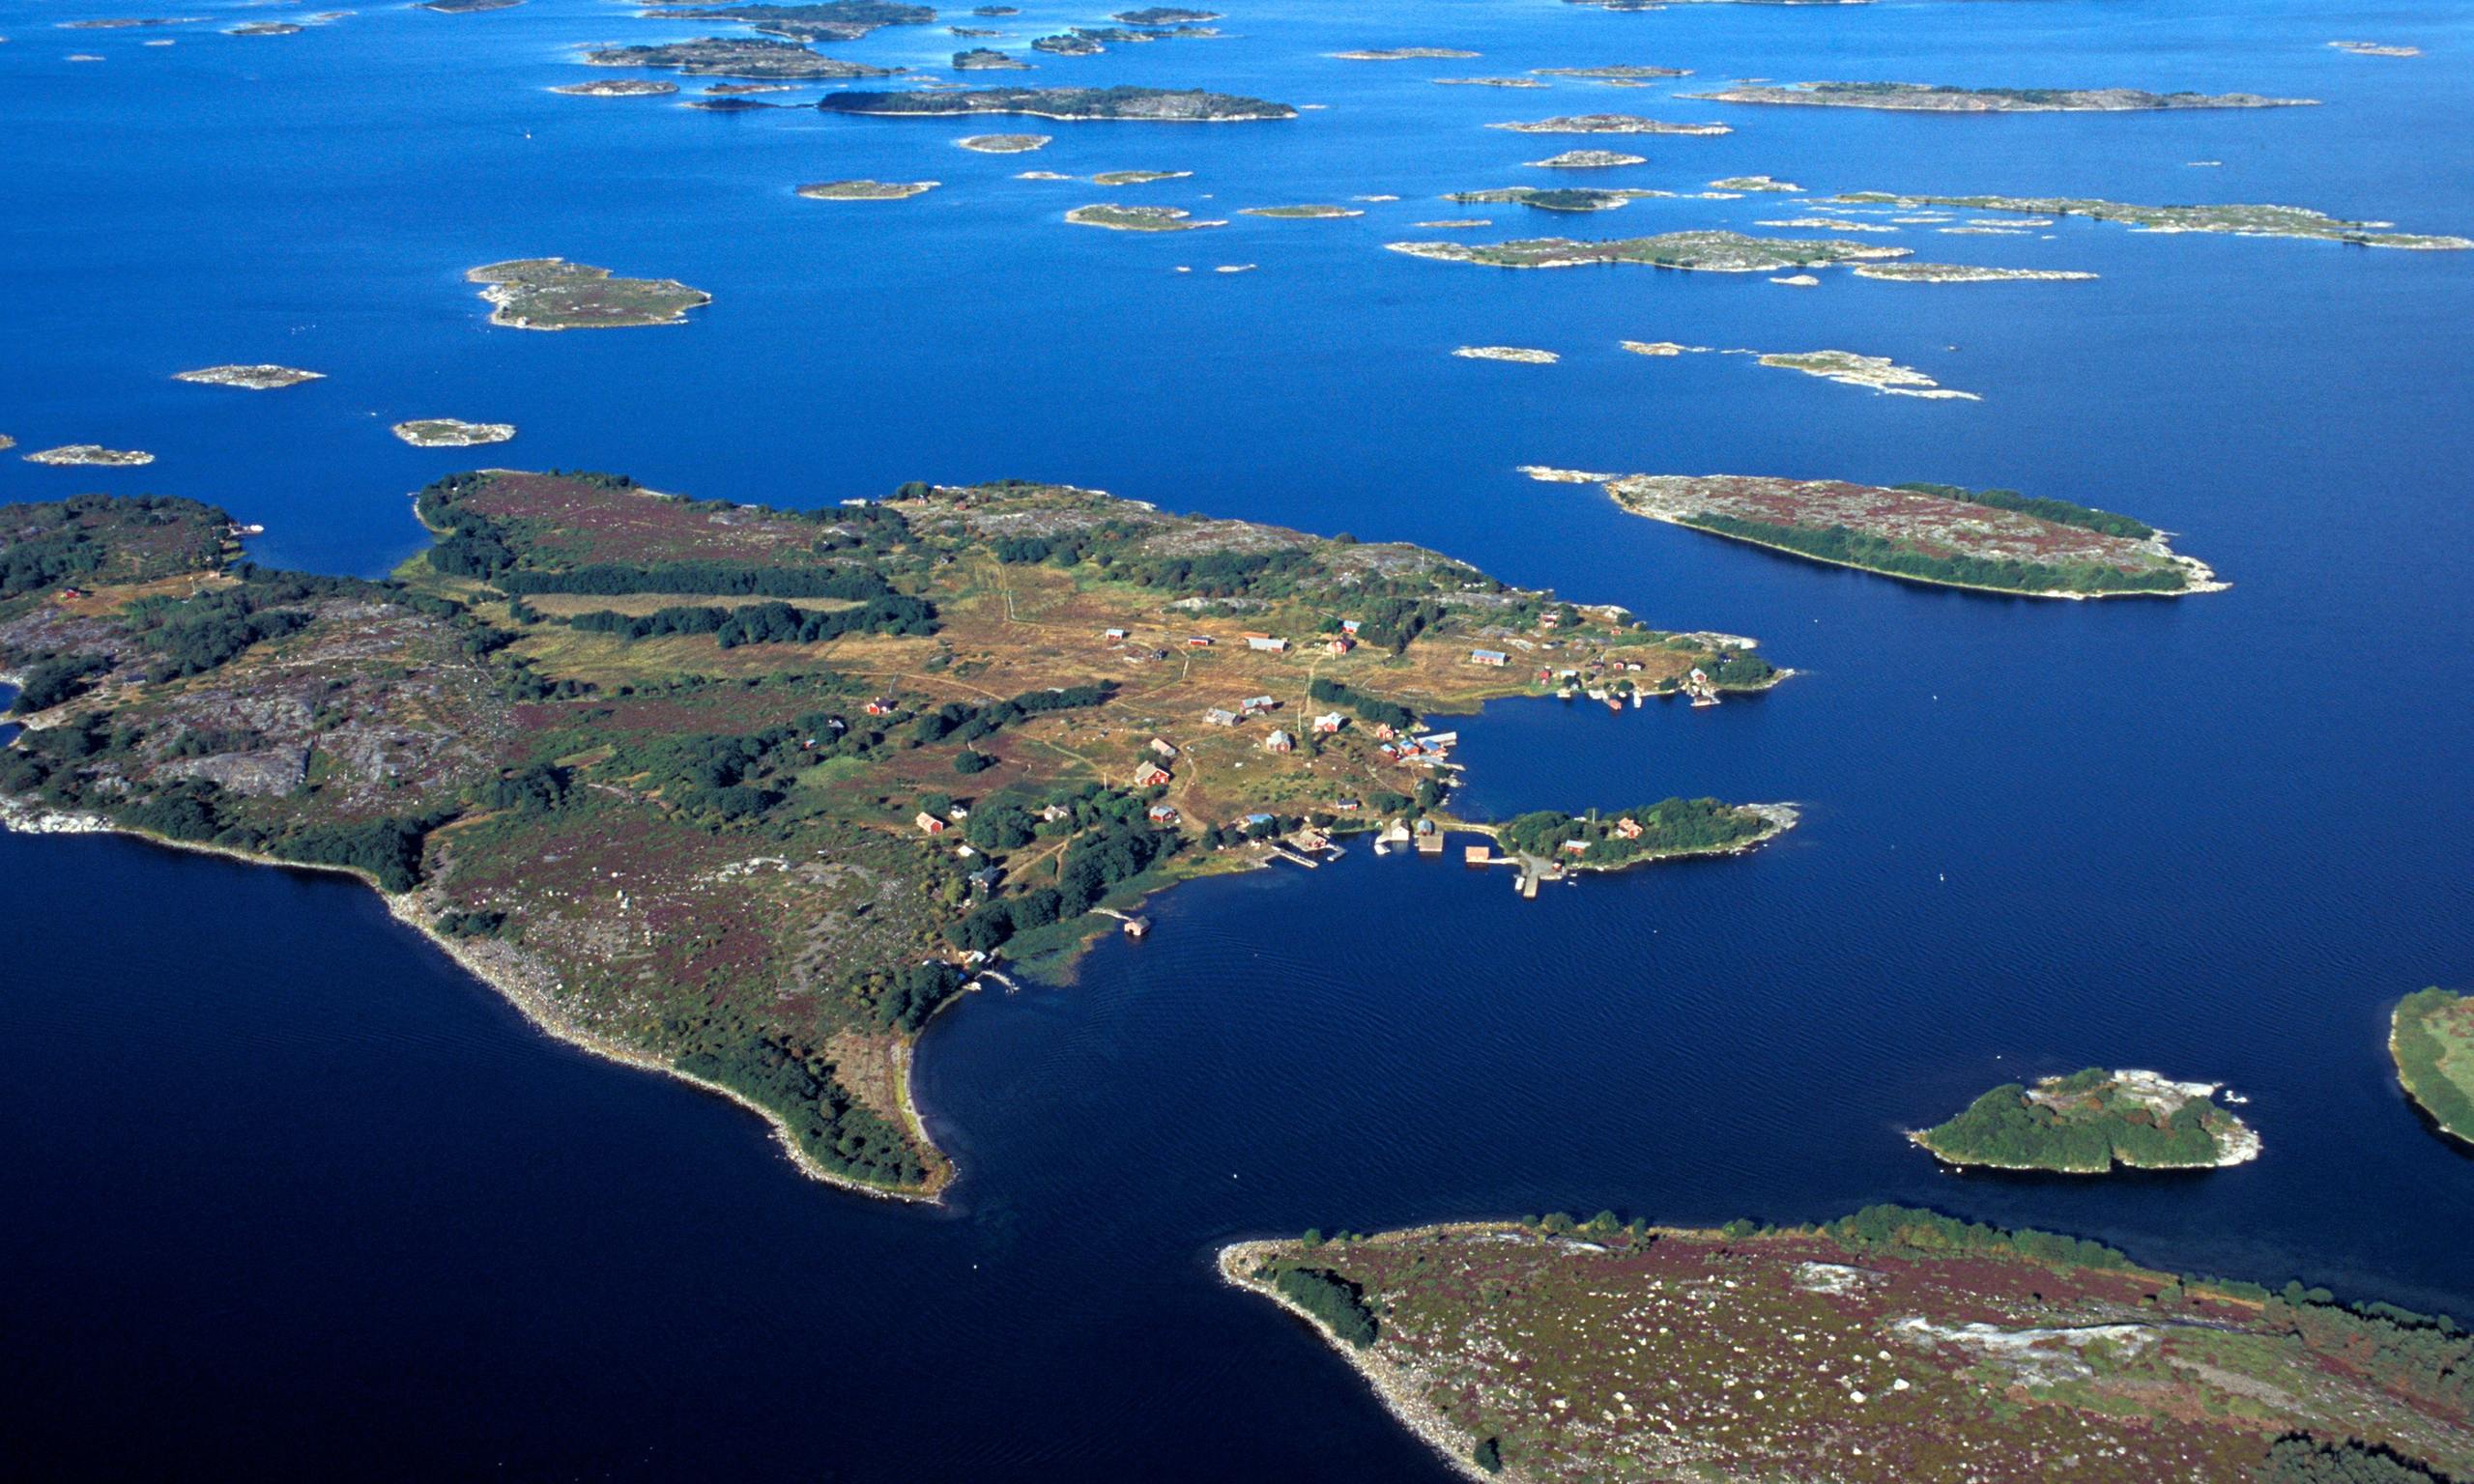 Архипелаг группа островов. Моонзундский архипелаг. Архипелаг Корнаты. Национальный парк архипелаг Финляндия. Архипелаг Турку Финляндия.